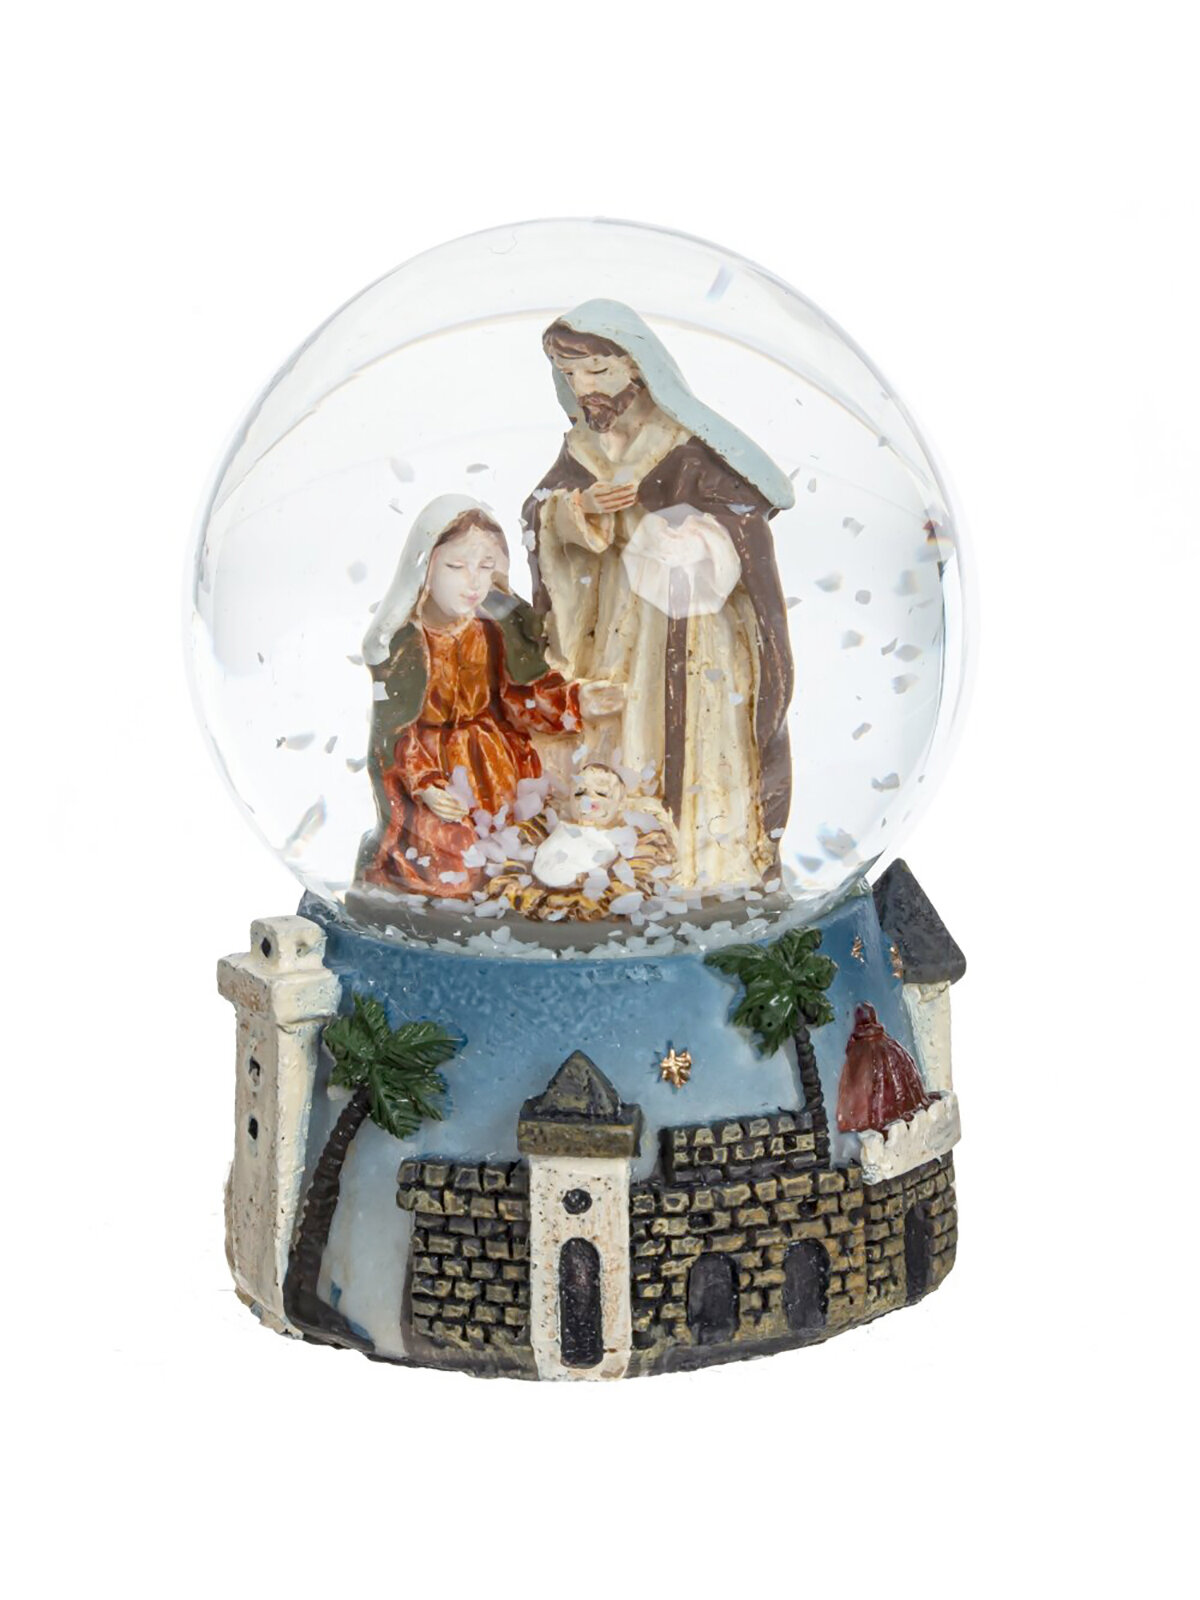 Фигурка новогодняя в стеклянном шаре, 4,5х4,5х6,5 см